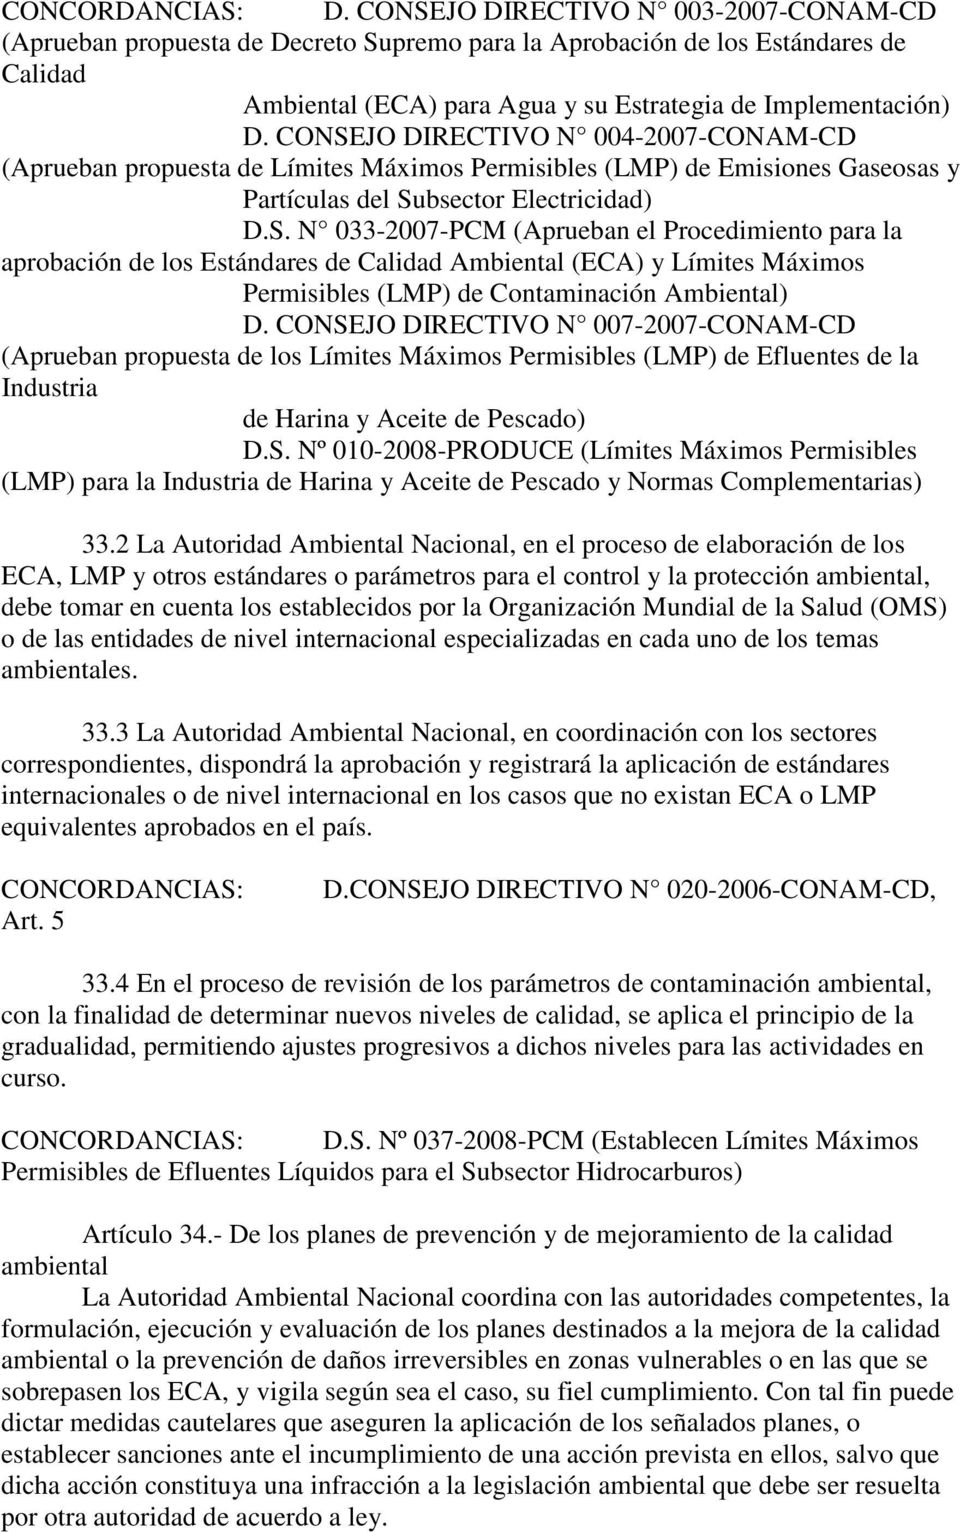 CONSEJO DIRECTIVO N 004-2007-CONAM-CD (Aprueban propuesta de Límites Máximos Permisibles (LMP) de Emisiones Gaseosas y Partículas del Subsector Electricidad) D.S. N 033-2007-PCM (Aprueban el Procedimiento para la aprobación de los Estándares de Calidad Ambiental (ECA) y Límites Máximos Permisibles (LMP) de Contaminación Ambiental) D.